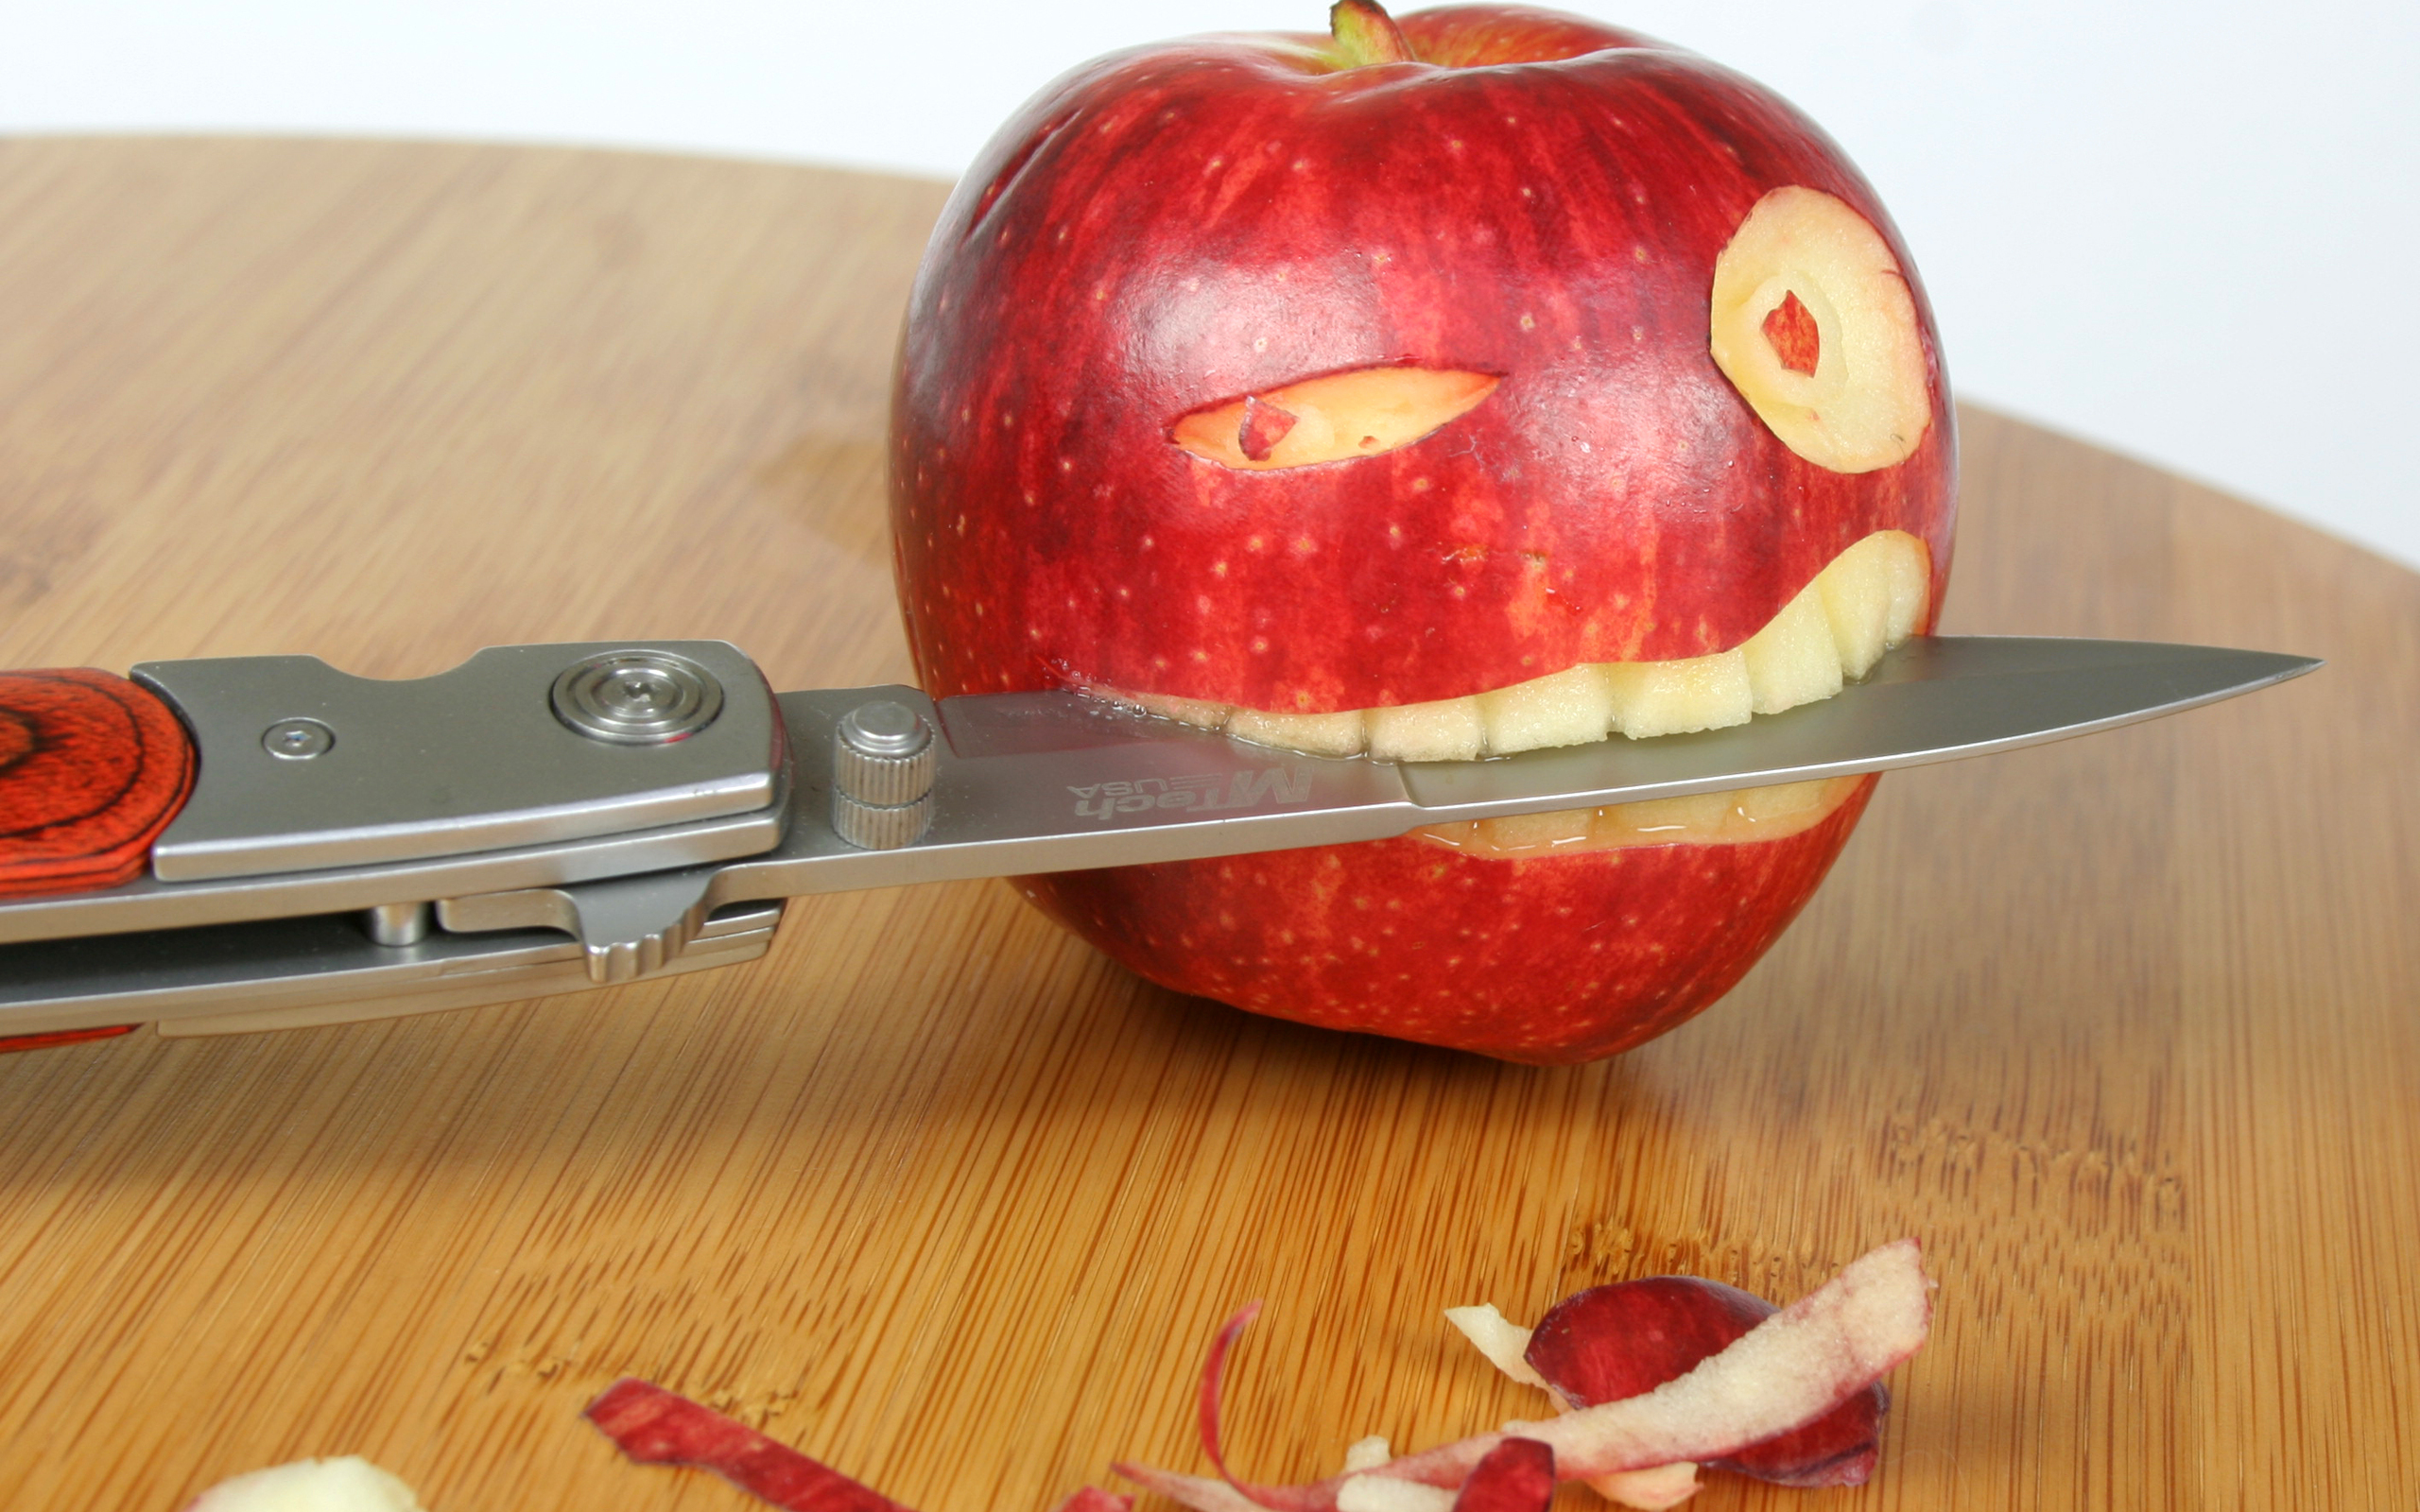 تصویر فانتزی سیب قرمز برش زده به شکل انسان